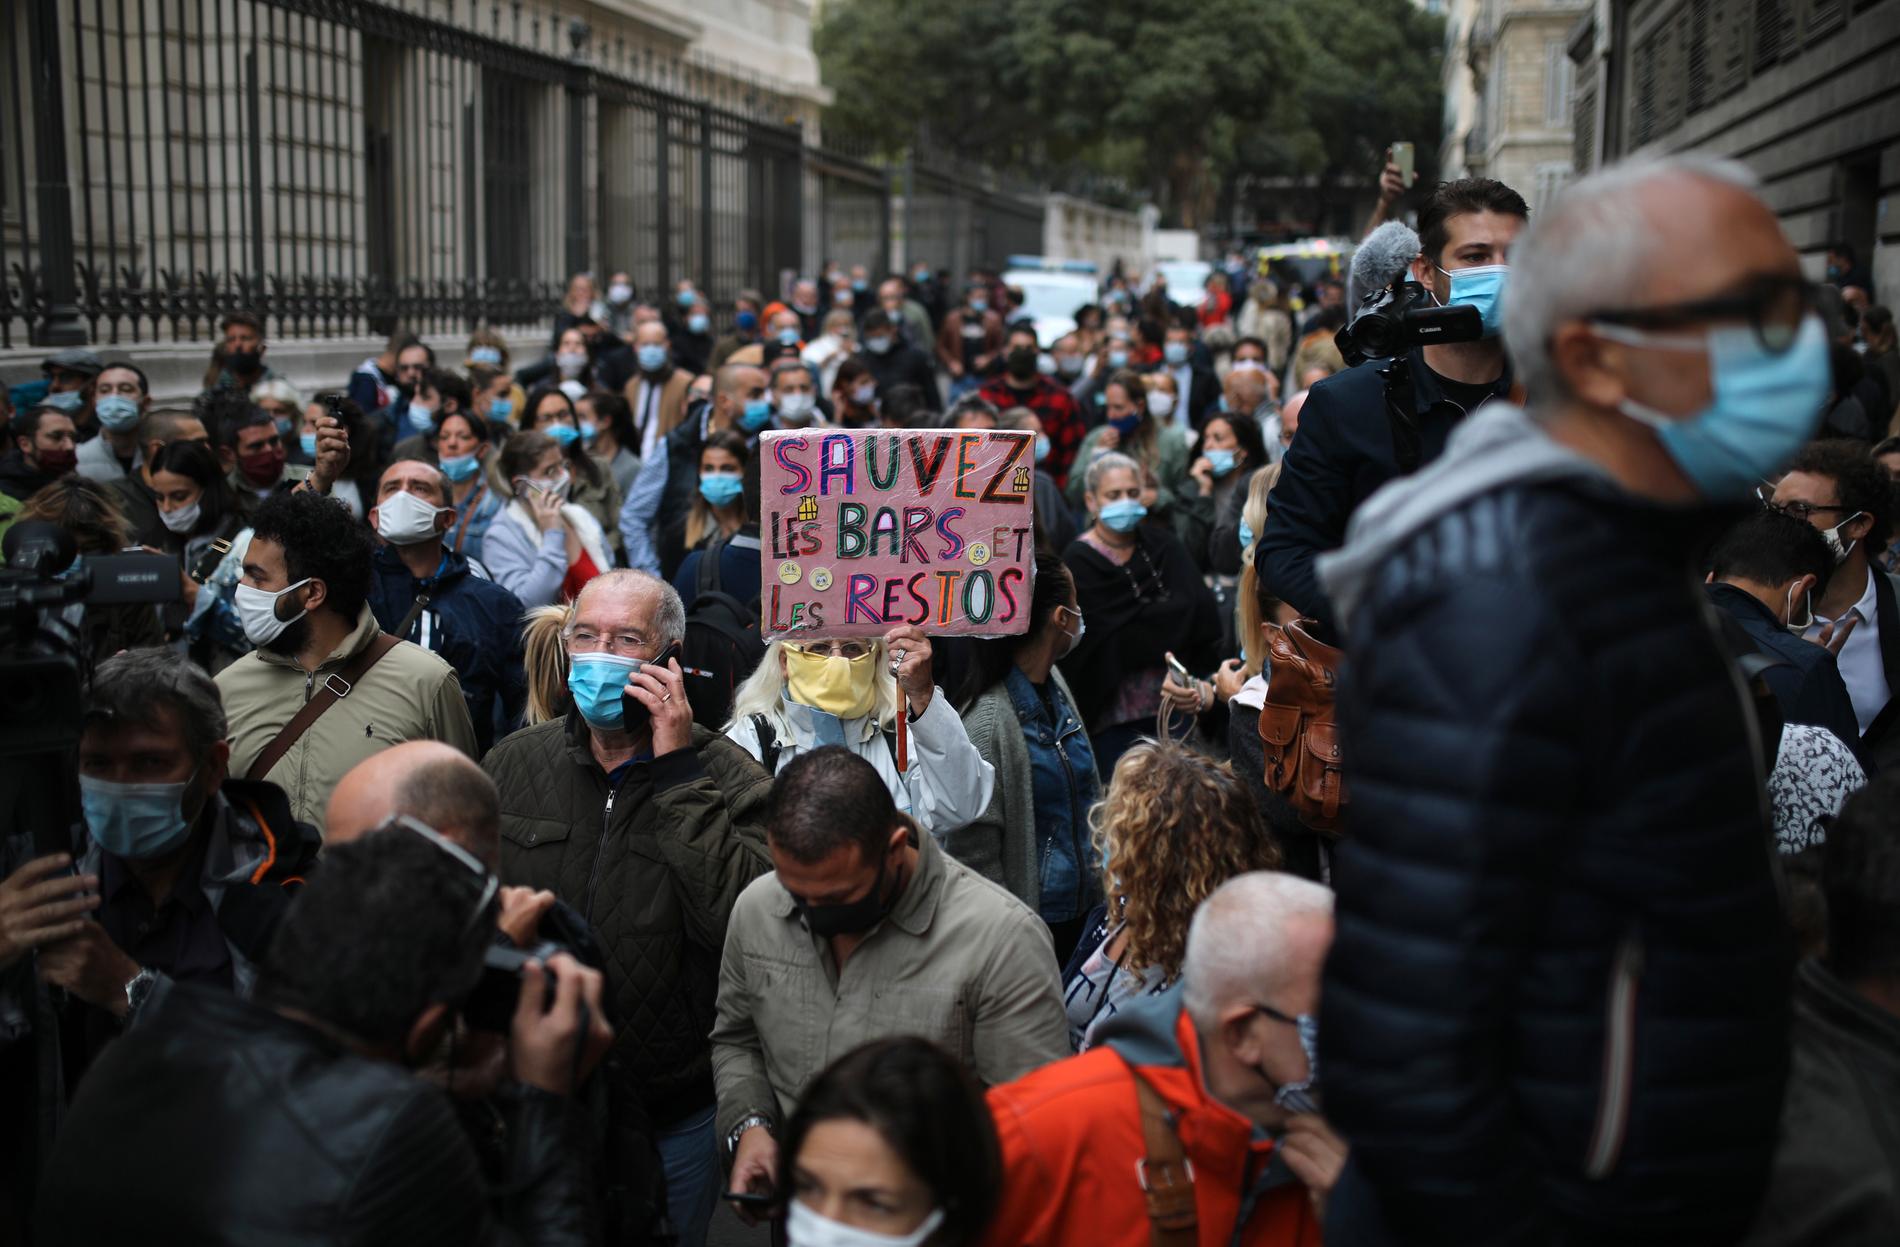 Arga krögare demonstrerade under fredagen i Marseille mot regeringens nya krav på nedstängningar. Här en demonstrant med skylten "Rädda barerna och restaurangerna".